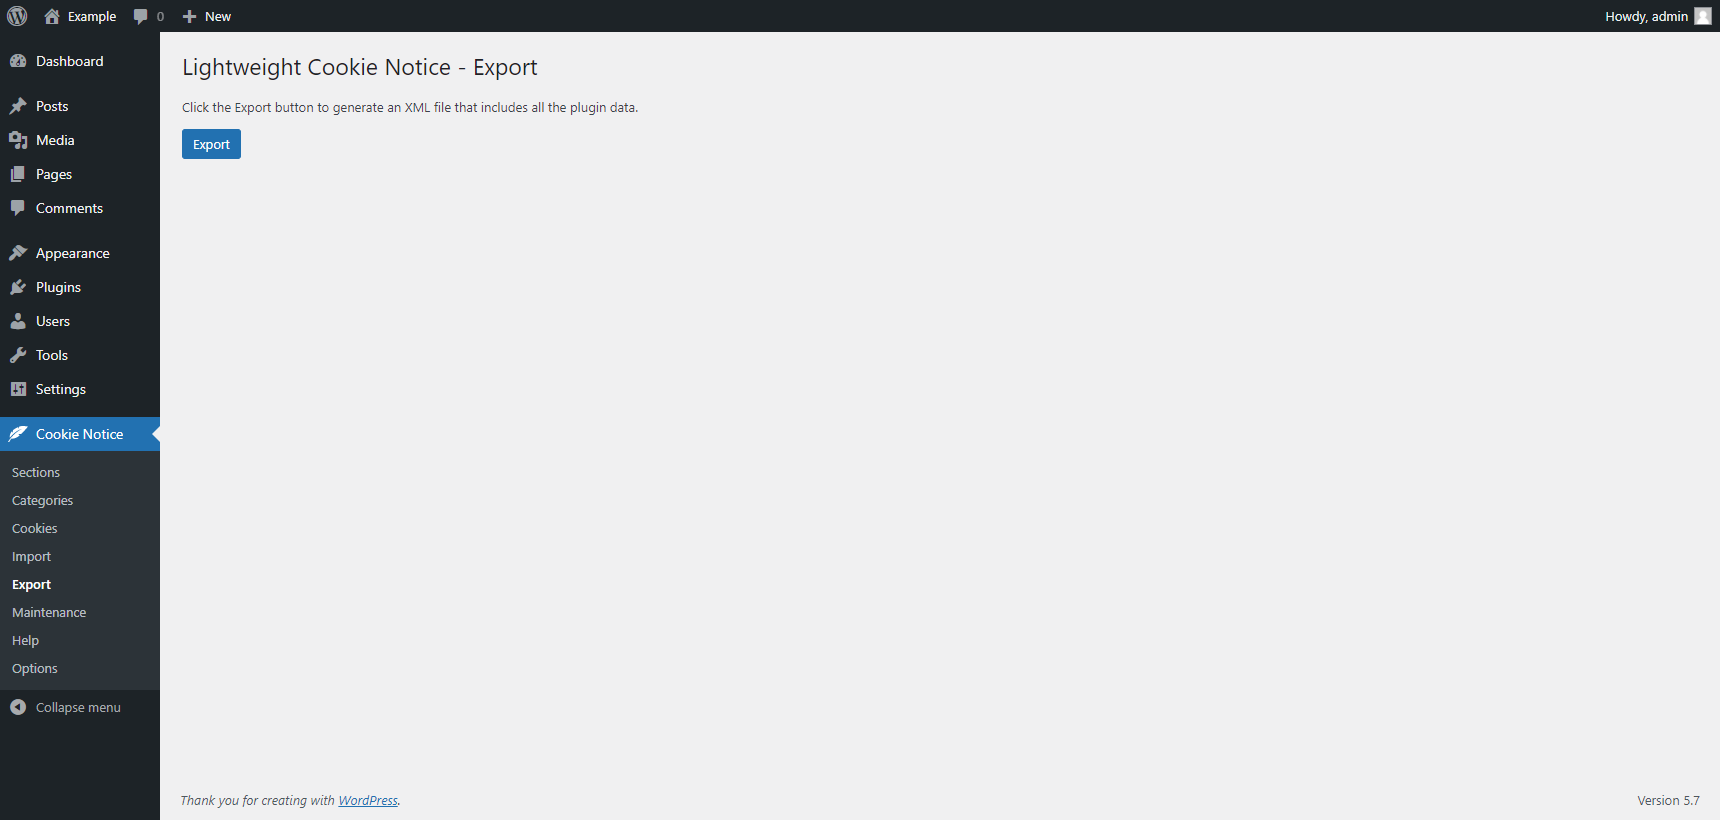 "Export" menu of the Lightweight Cookie Notice plugin for WordPress.